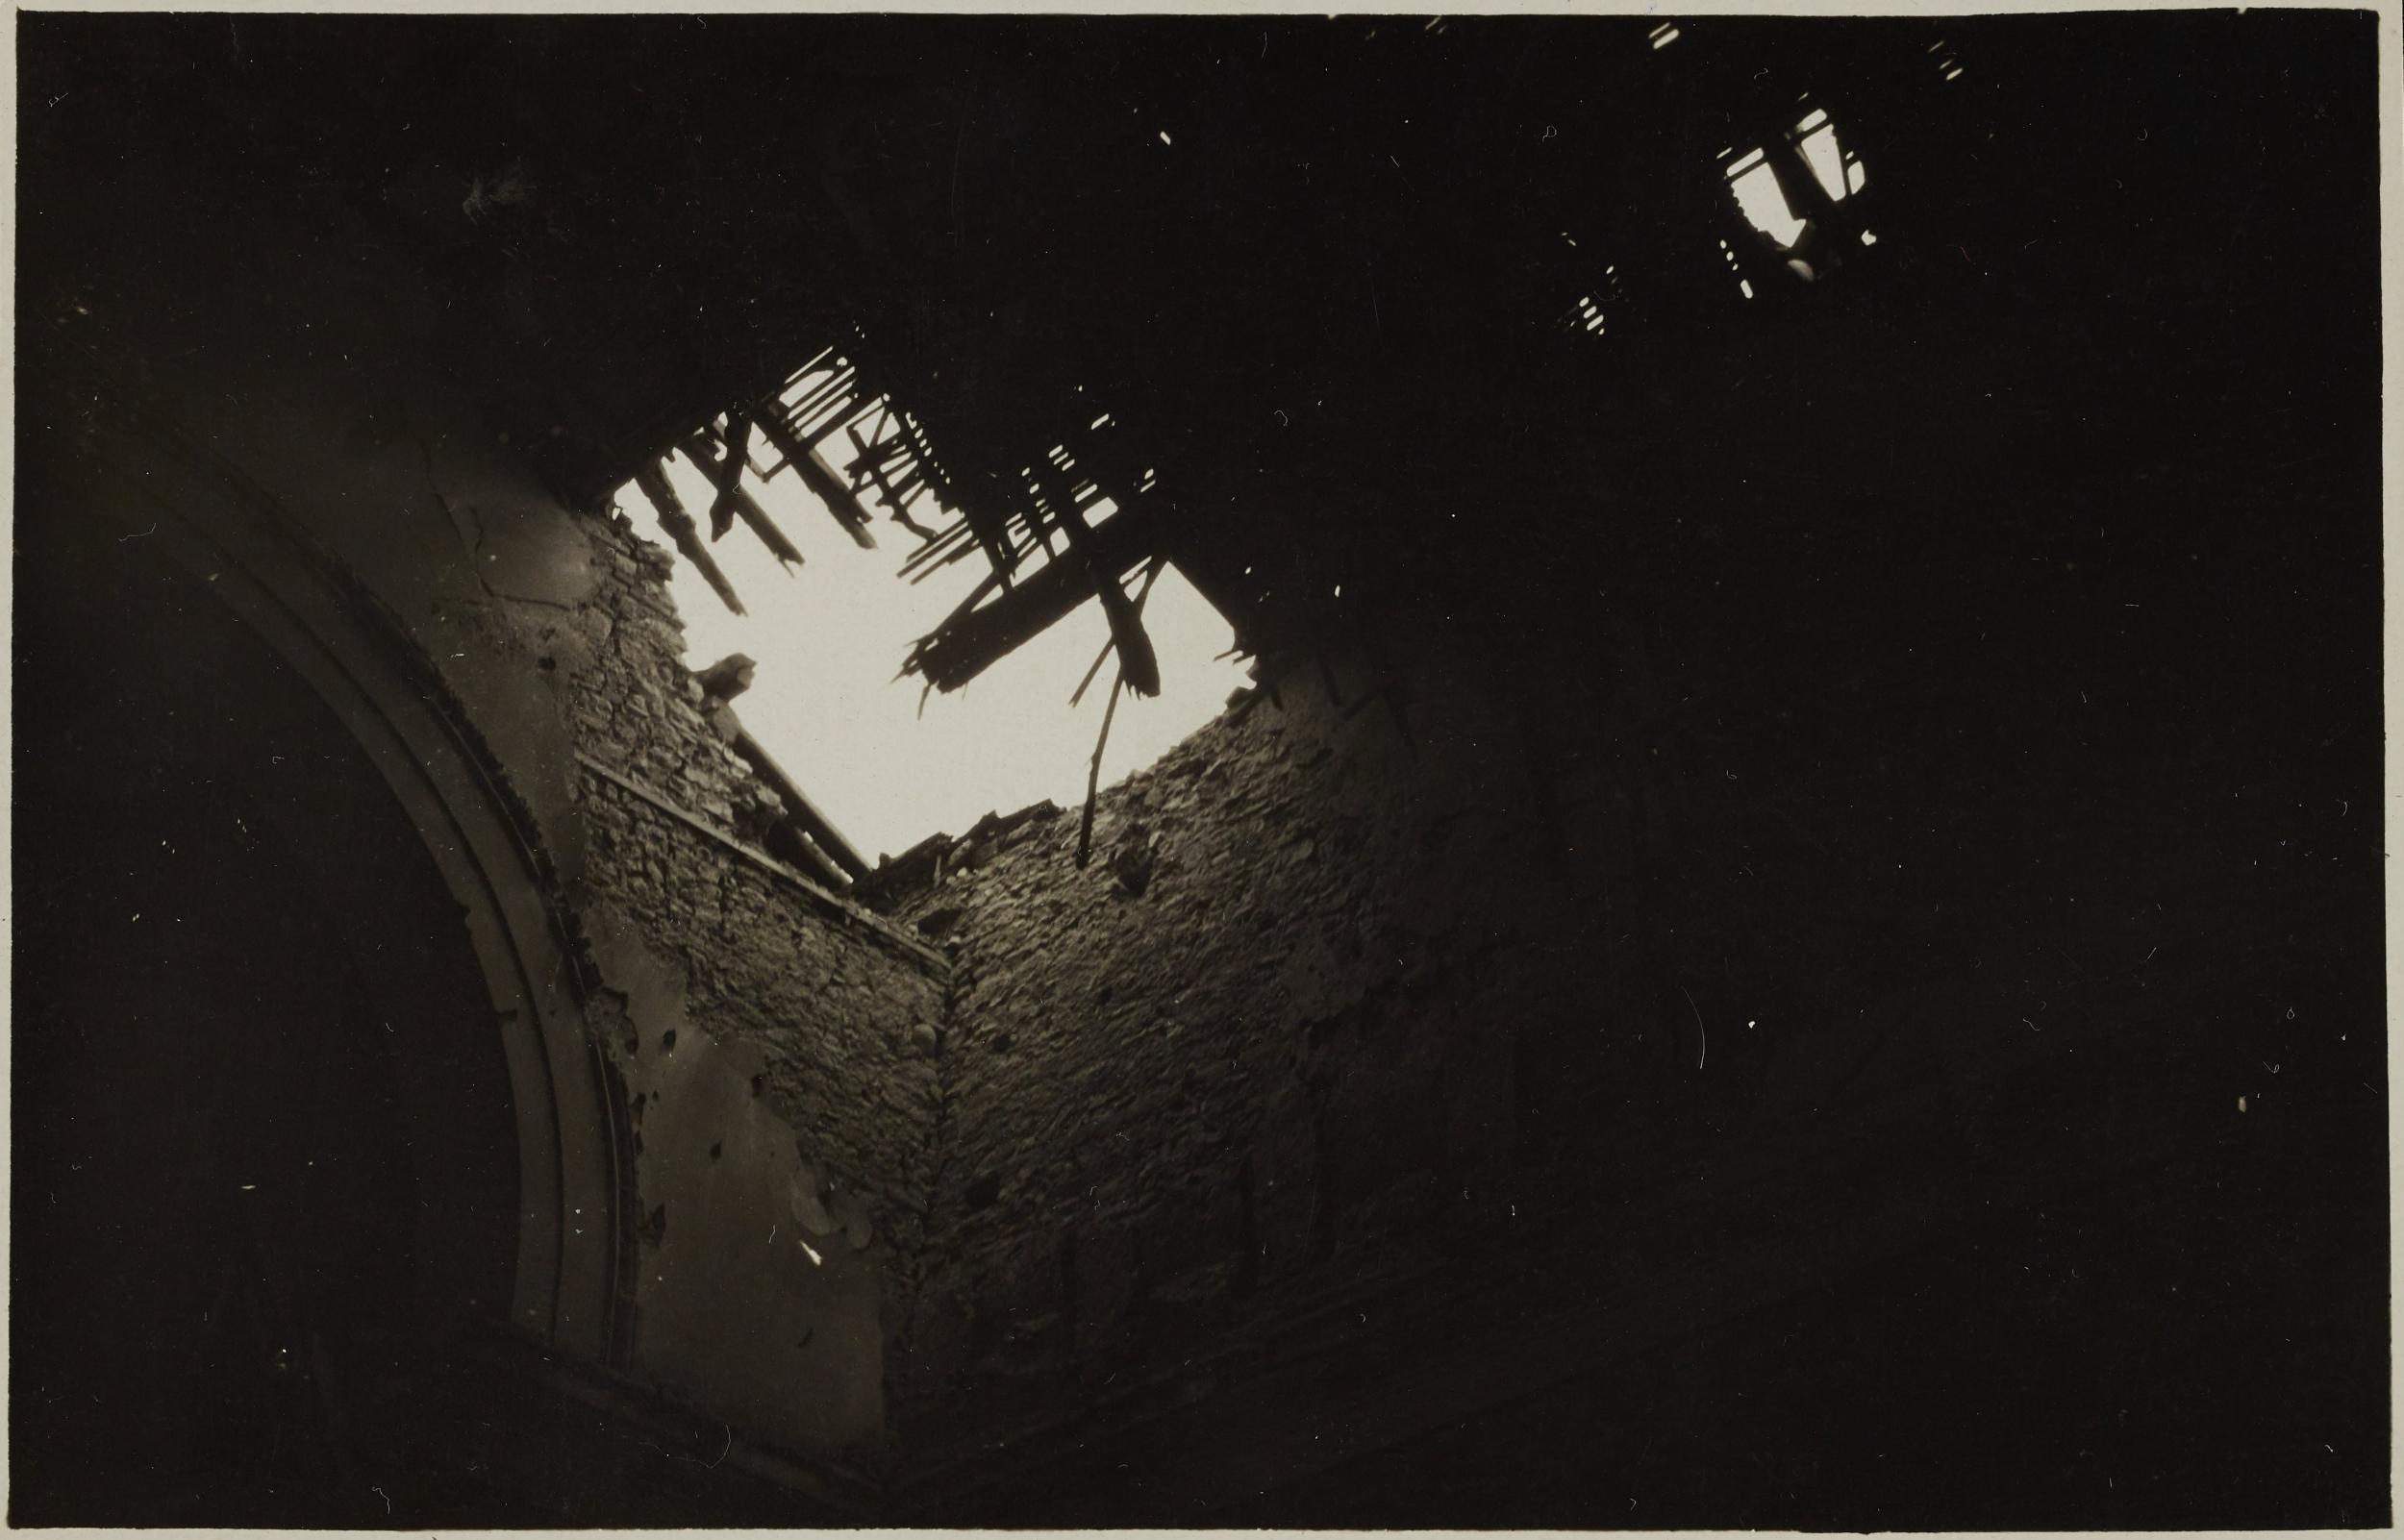 Fotografo non identificato, Possagno - interno della Gipsoteca dopo i bombardamenti, la volta, gelatina ai sali d'argento, MPI6023198